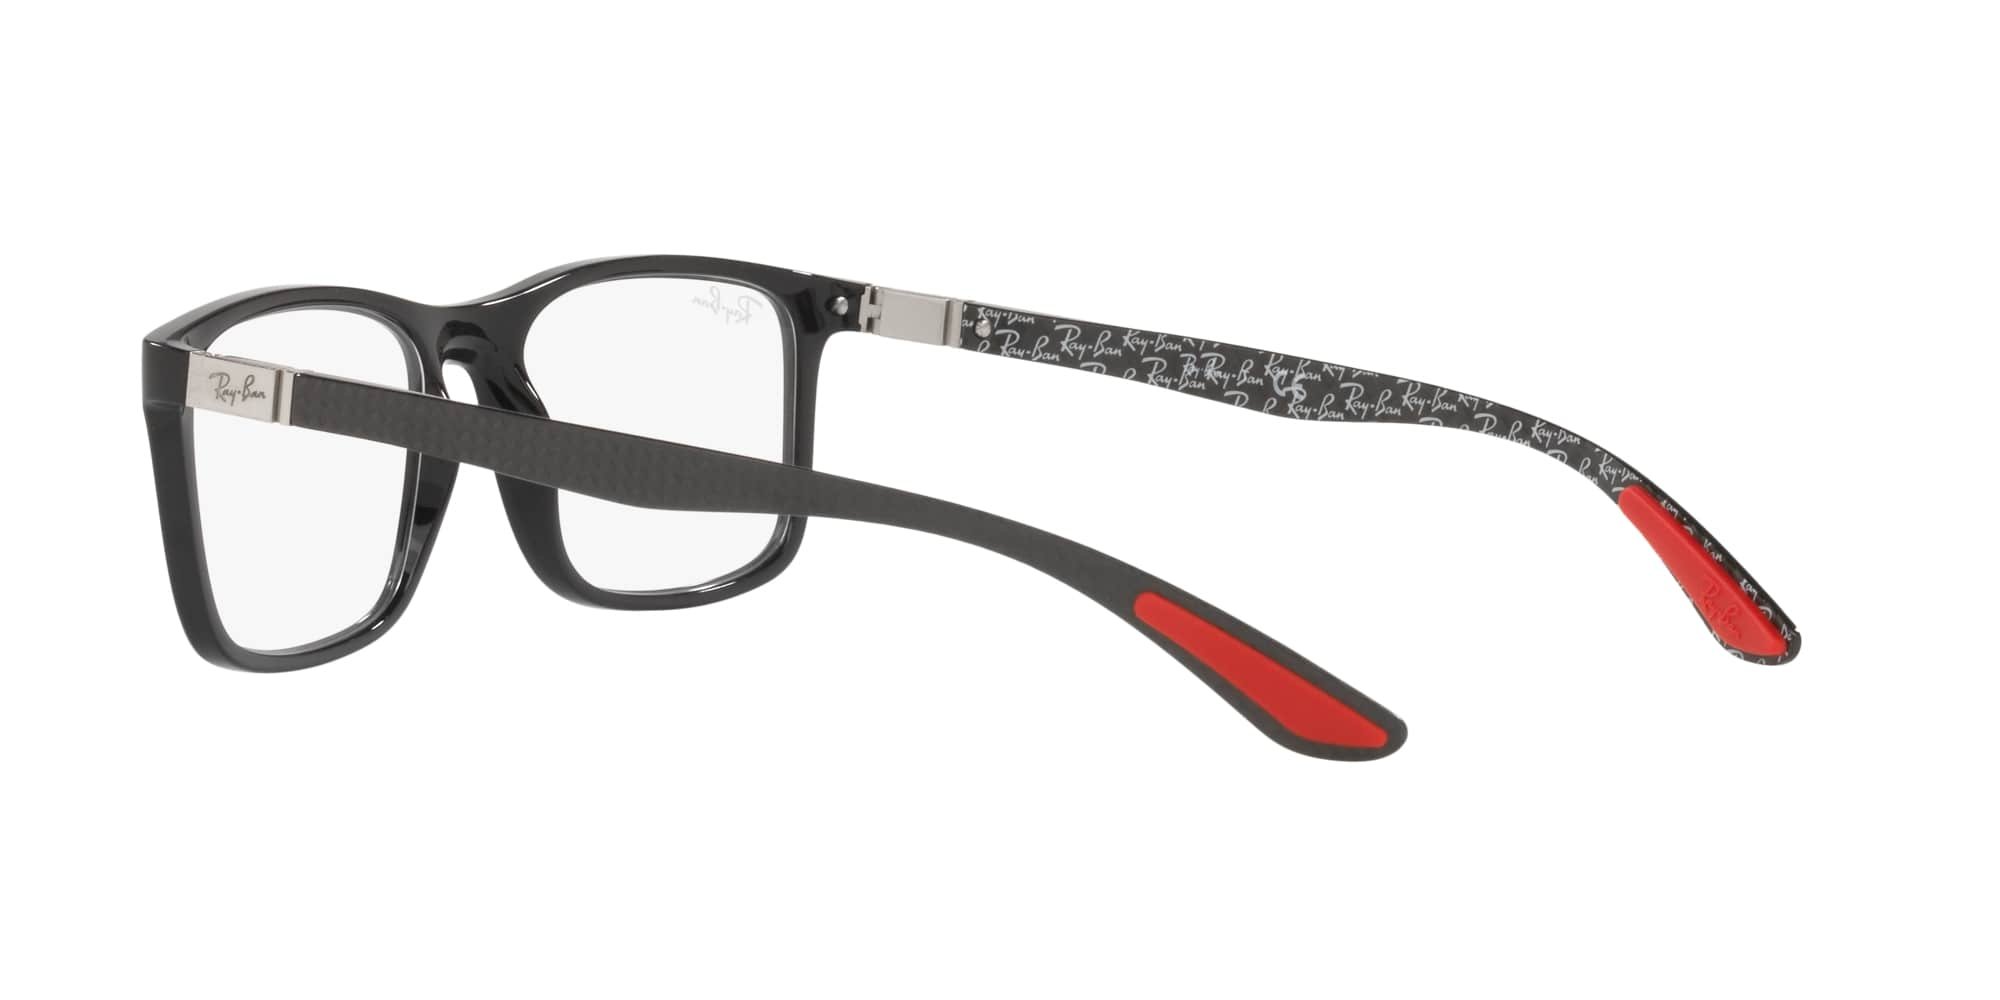 Das Bild zeigt die Korrektionsbrille RX8908 2000 von der Marke Ray Ban in schwarz.